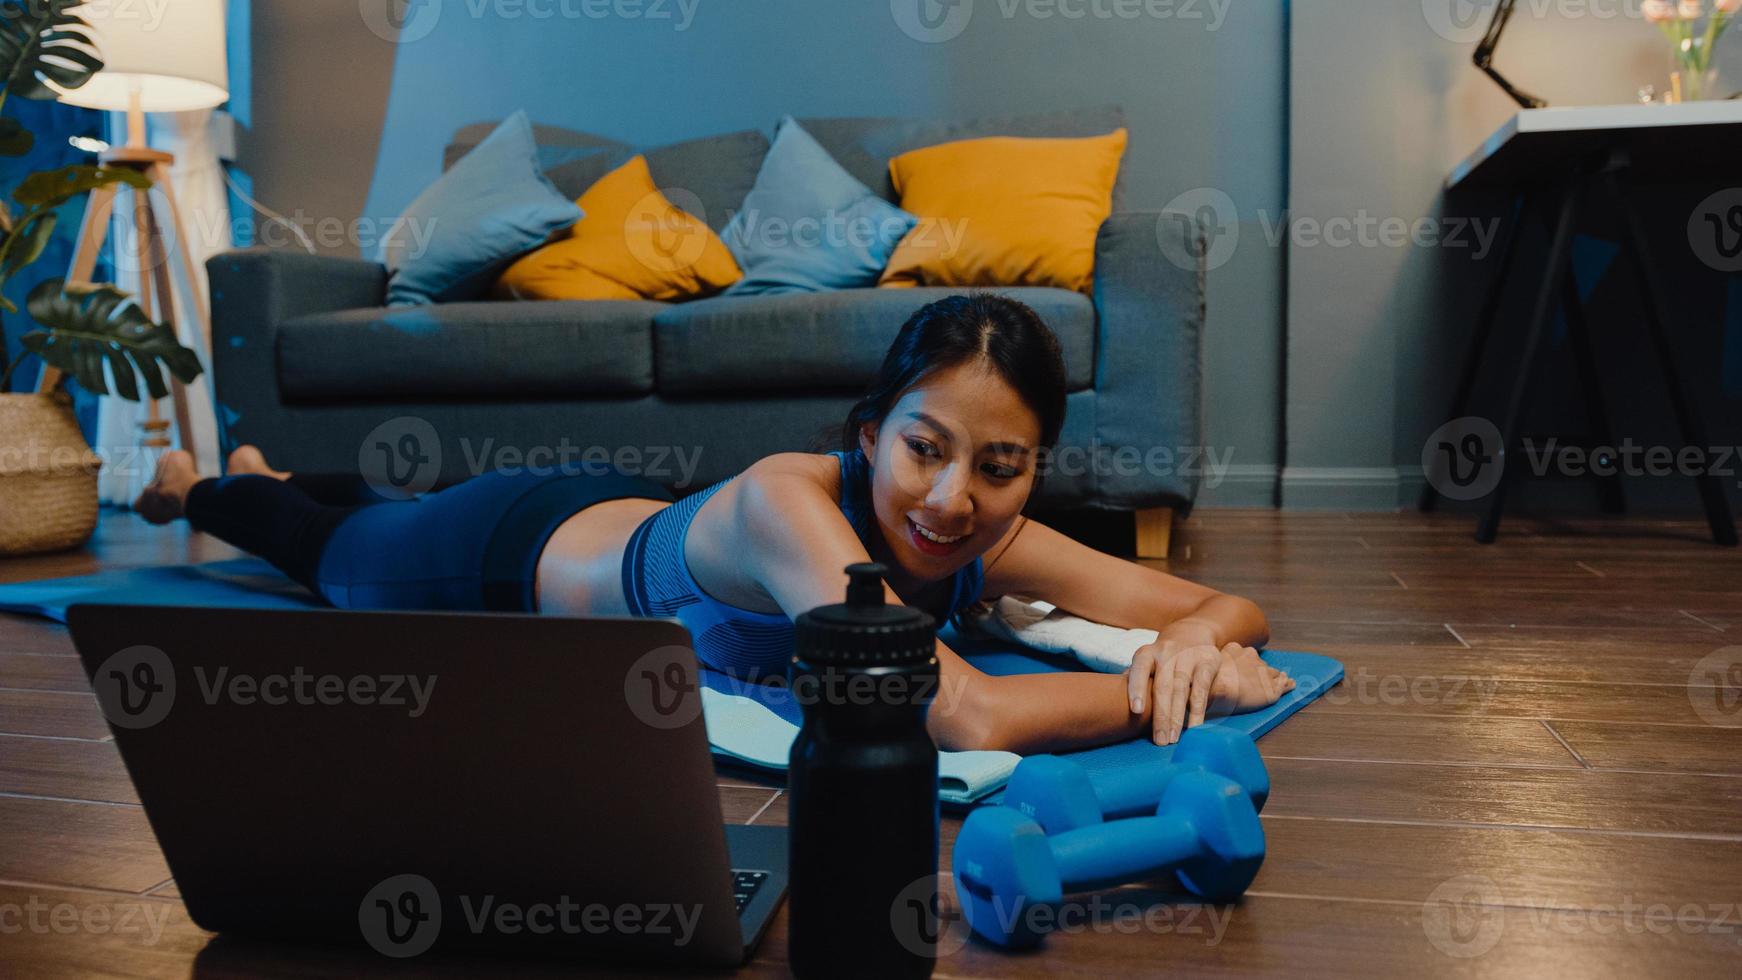 jeune femme asiatique en vêtements de sport faisant de l'exercice et utilisant un ordinateur portable pour regarder un didacticiel vidéo de yoga la nuit à la maison. formation à distance avec entraîneur personnel, distance sociale, concept d'éducation en ligne. photo